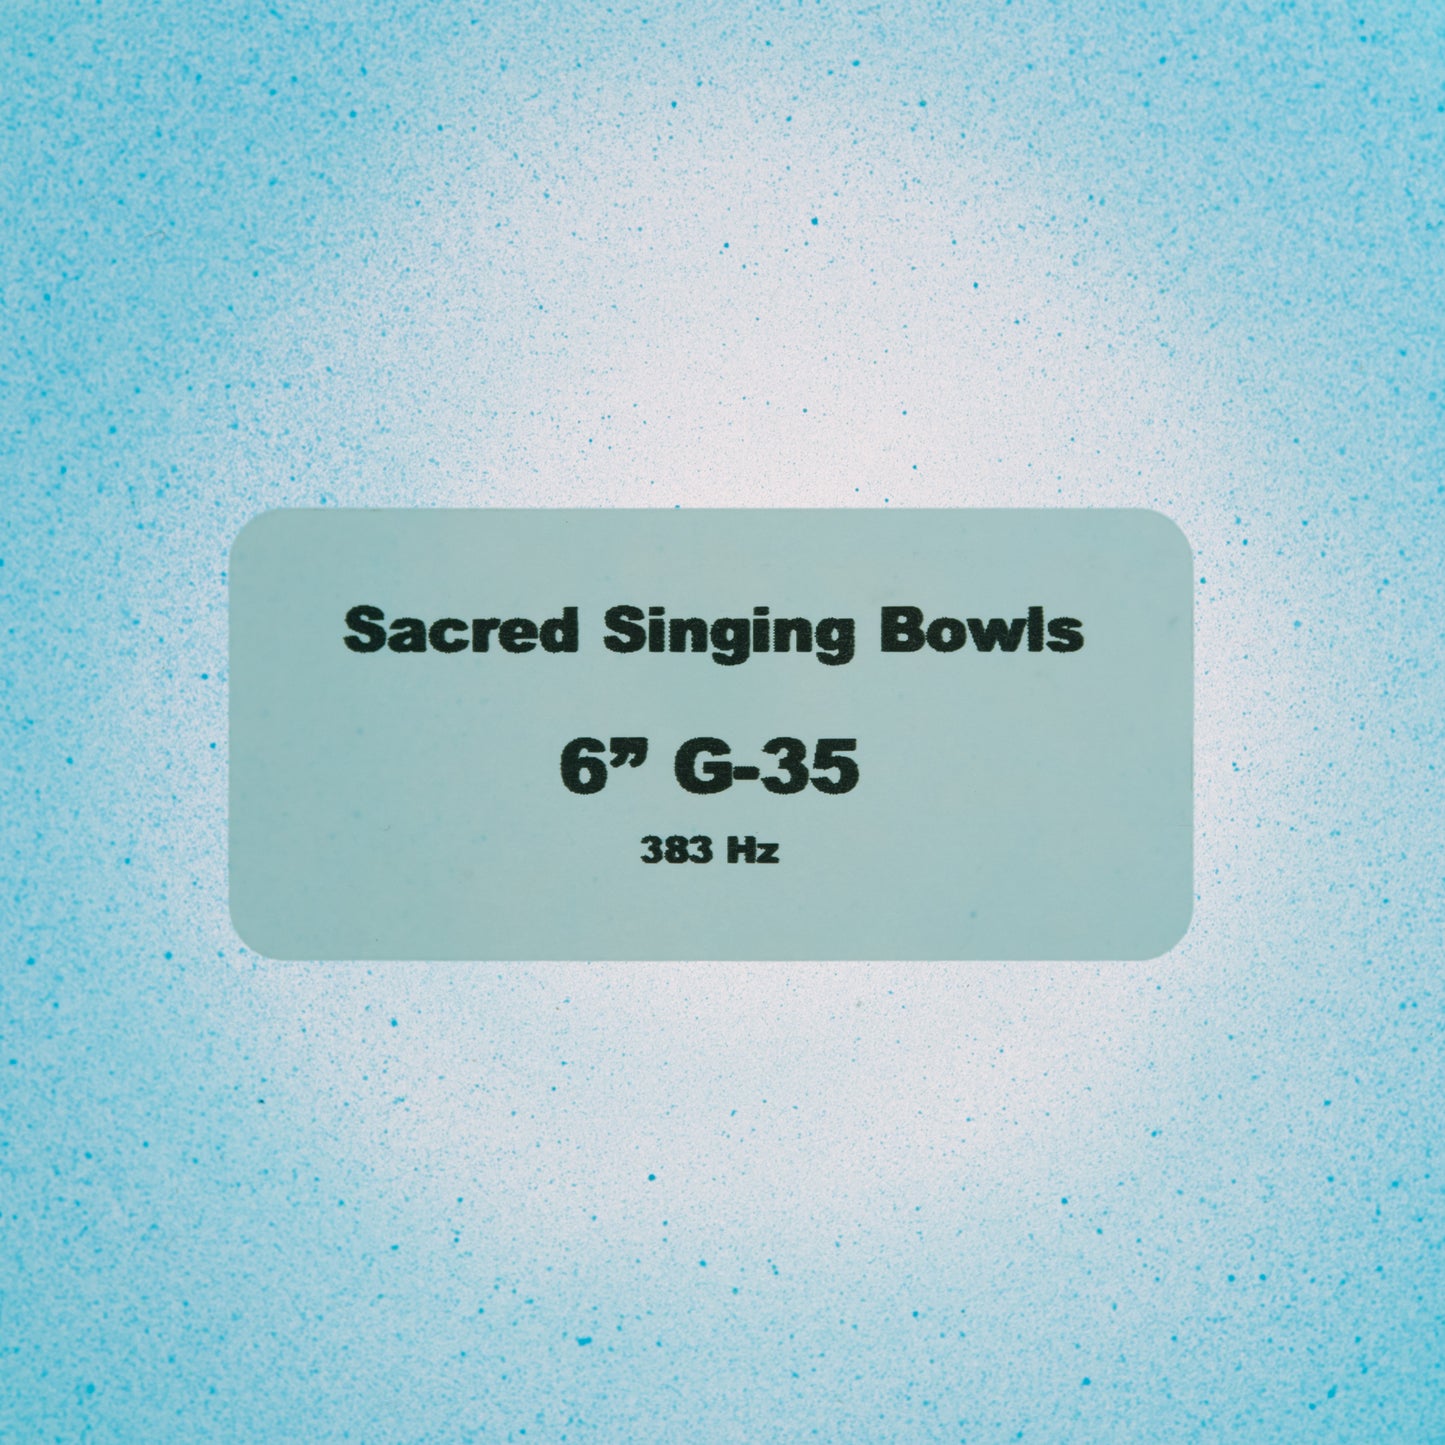 6" G-35 Blue Green Tourmaline Color Crystal Singing Bowl, Sacred Singing Bowls